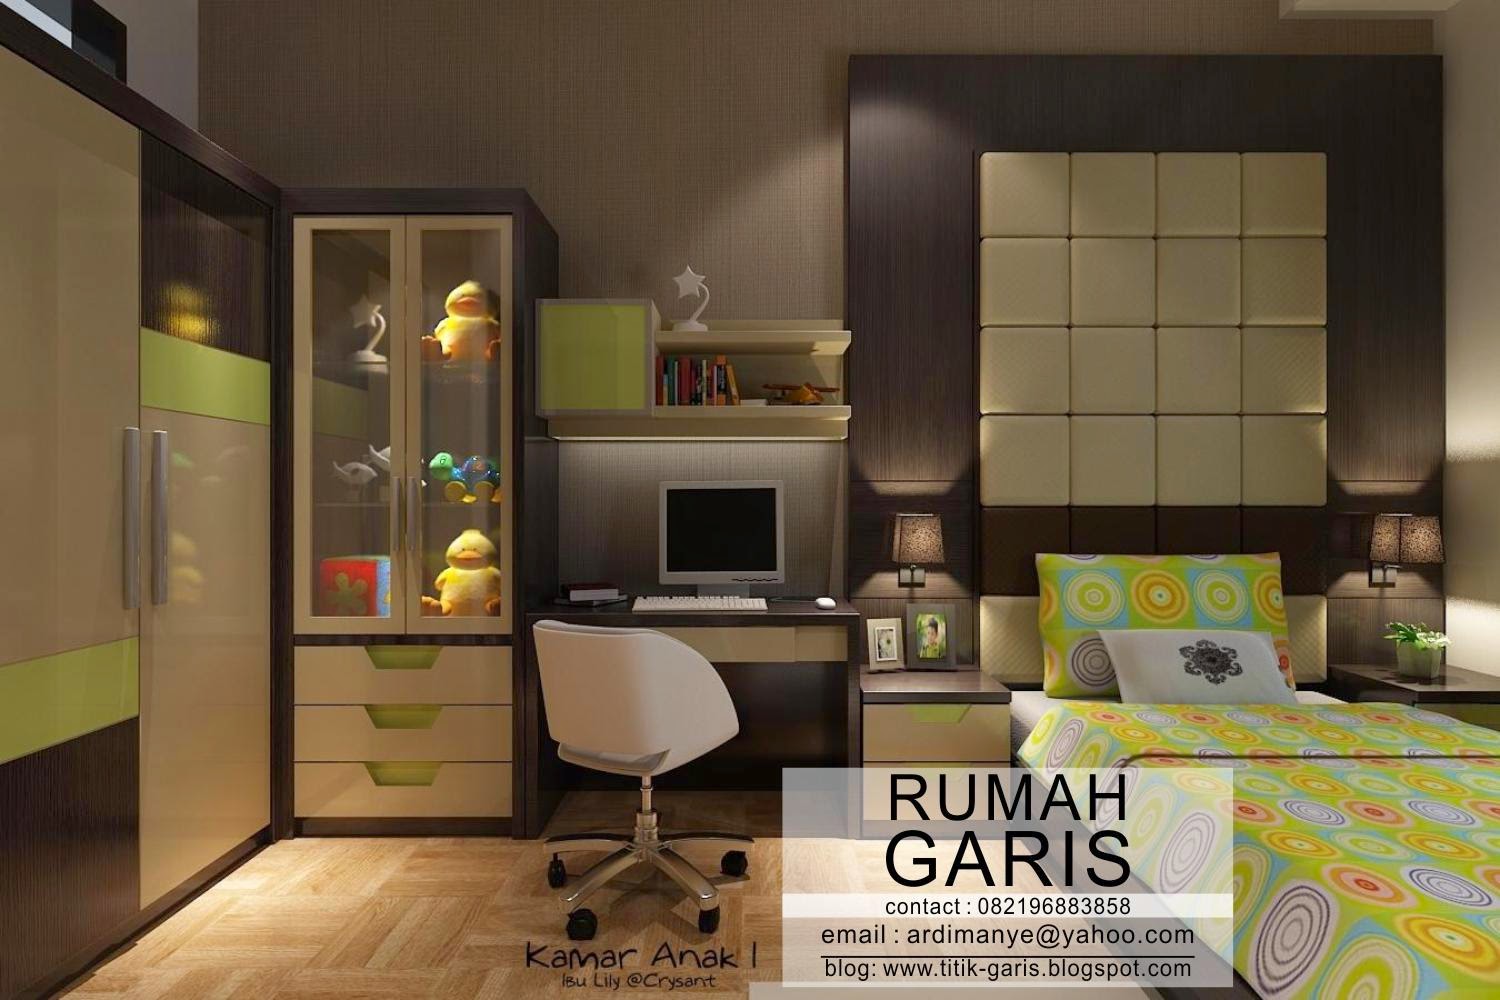 Desain interior model kamar  anak ibu Lily Rumah Garis